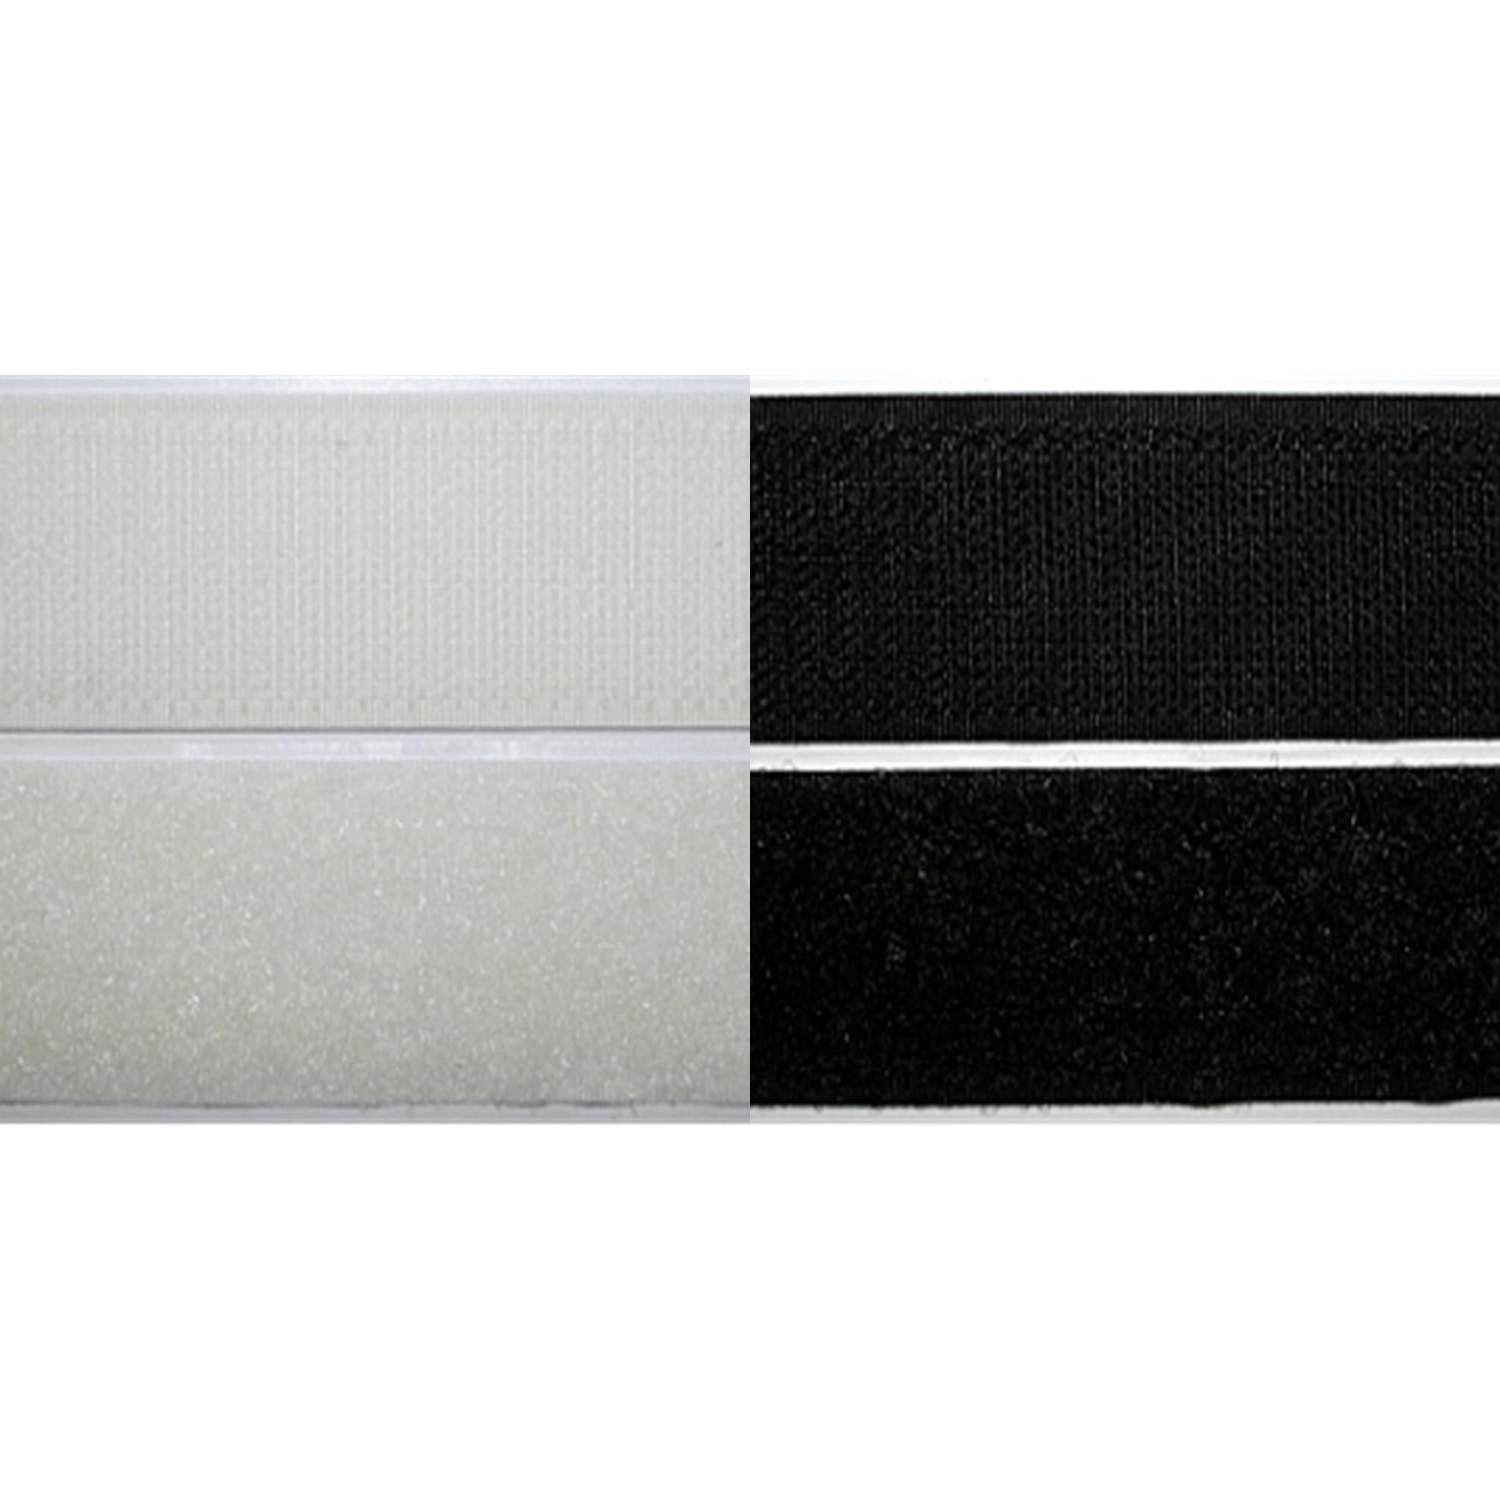 Klettband selbstklebend 100mm breit in 2 Farben